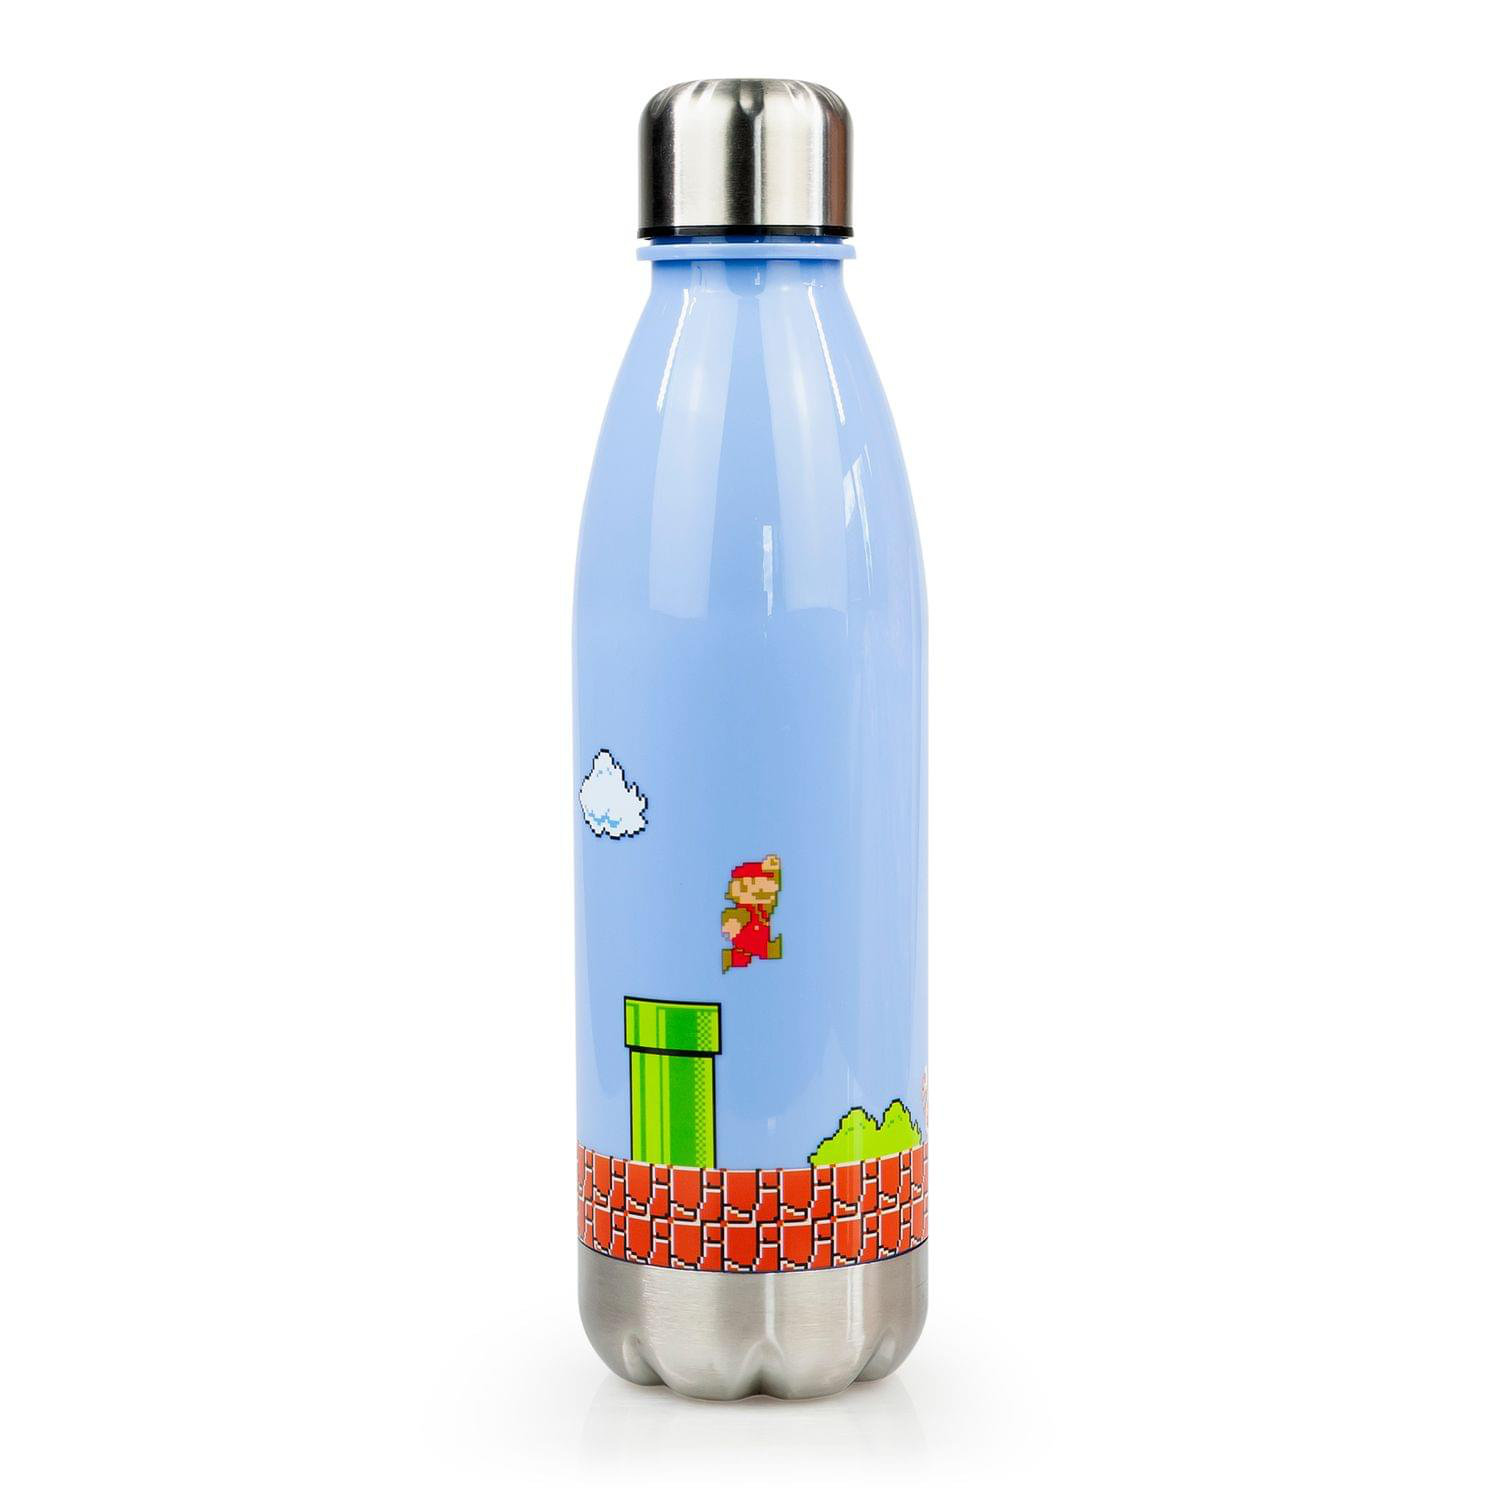 https://assets.wfcdn.com/im/25697453/compr-r85/2173/217367472/just-funky-17oz-plastic-water-bottle.jpg